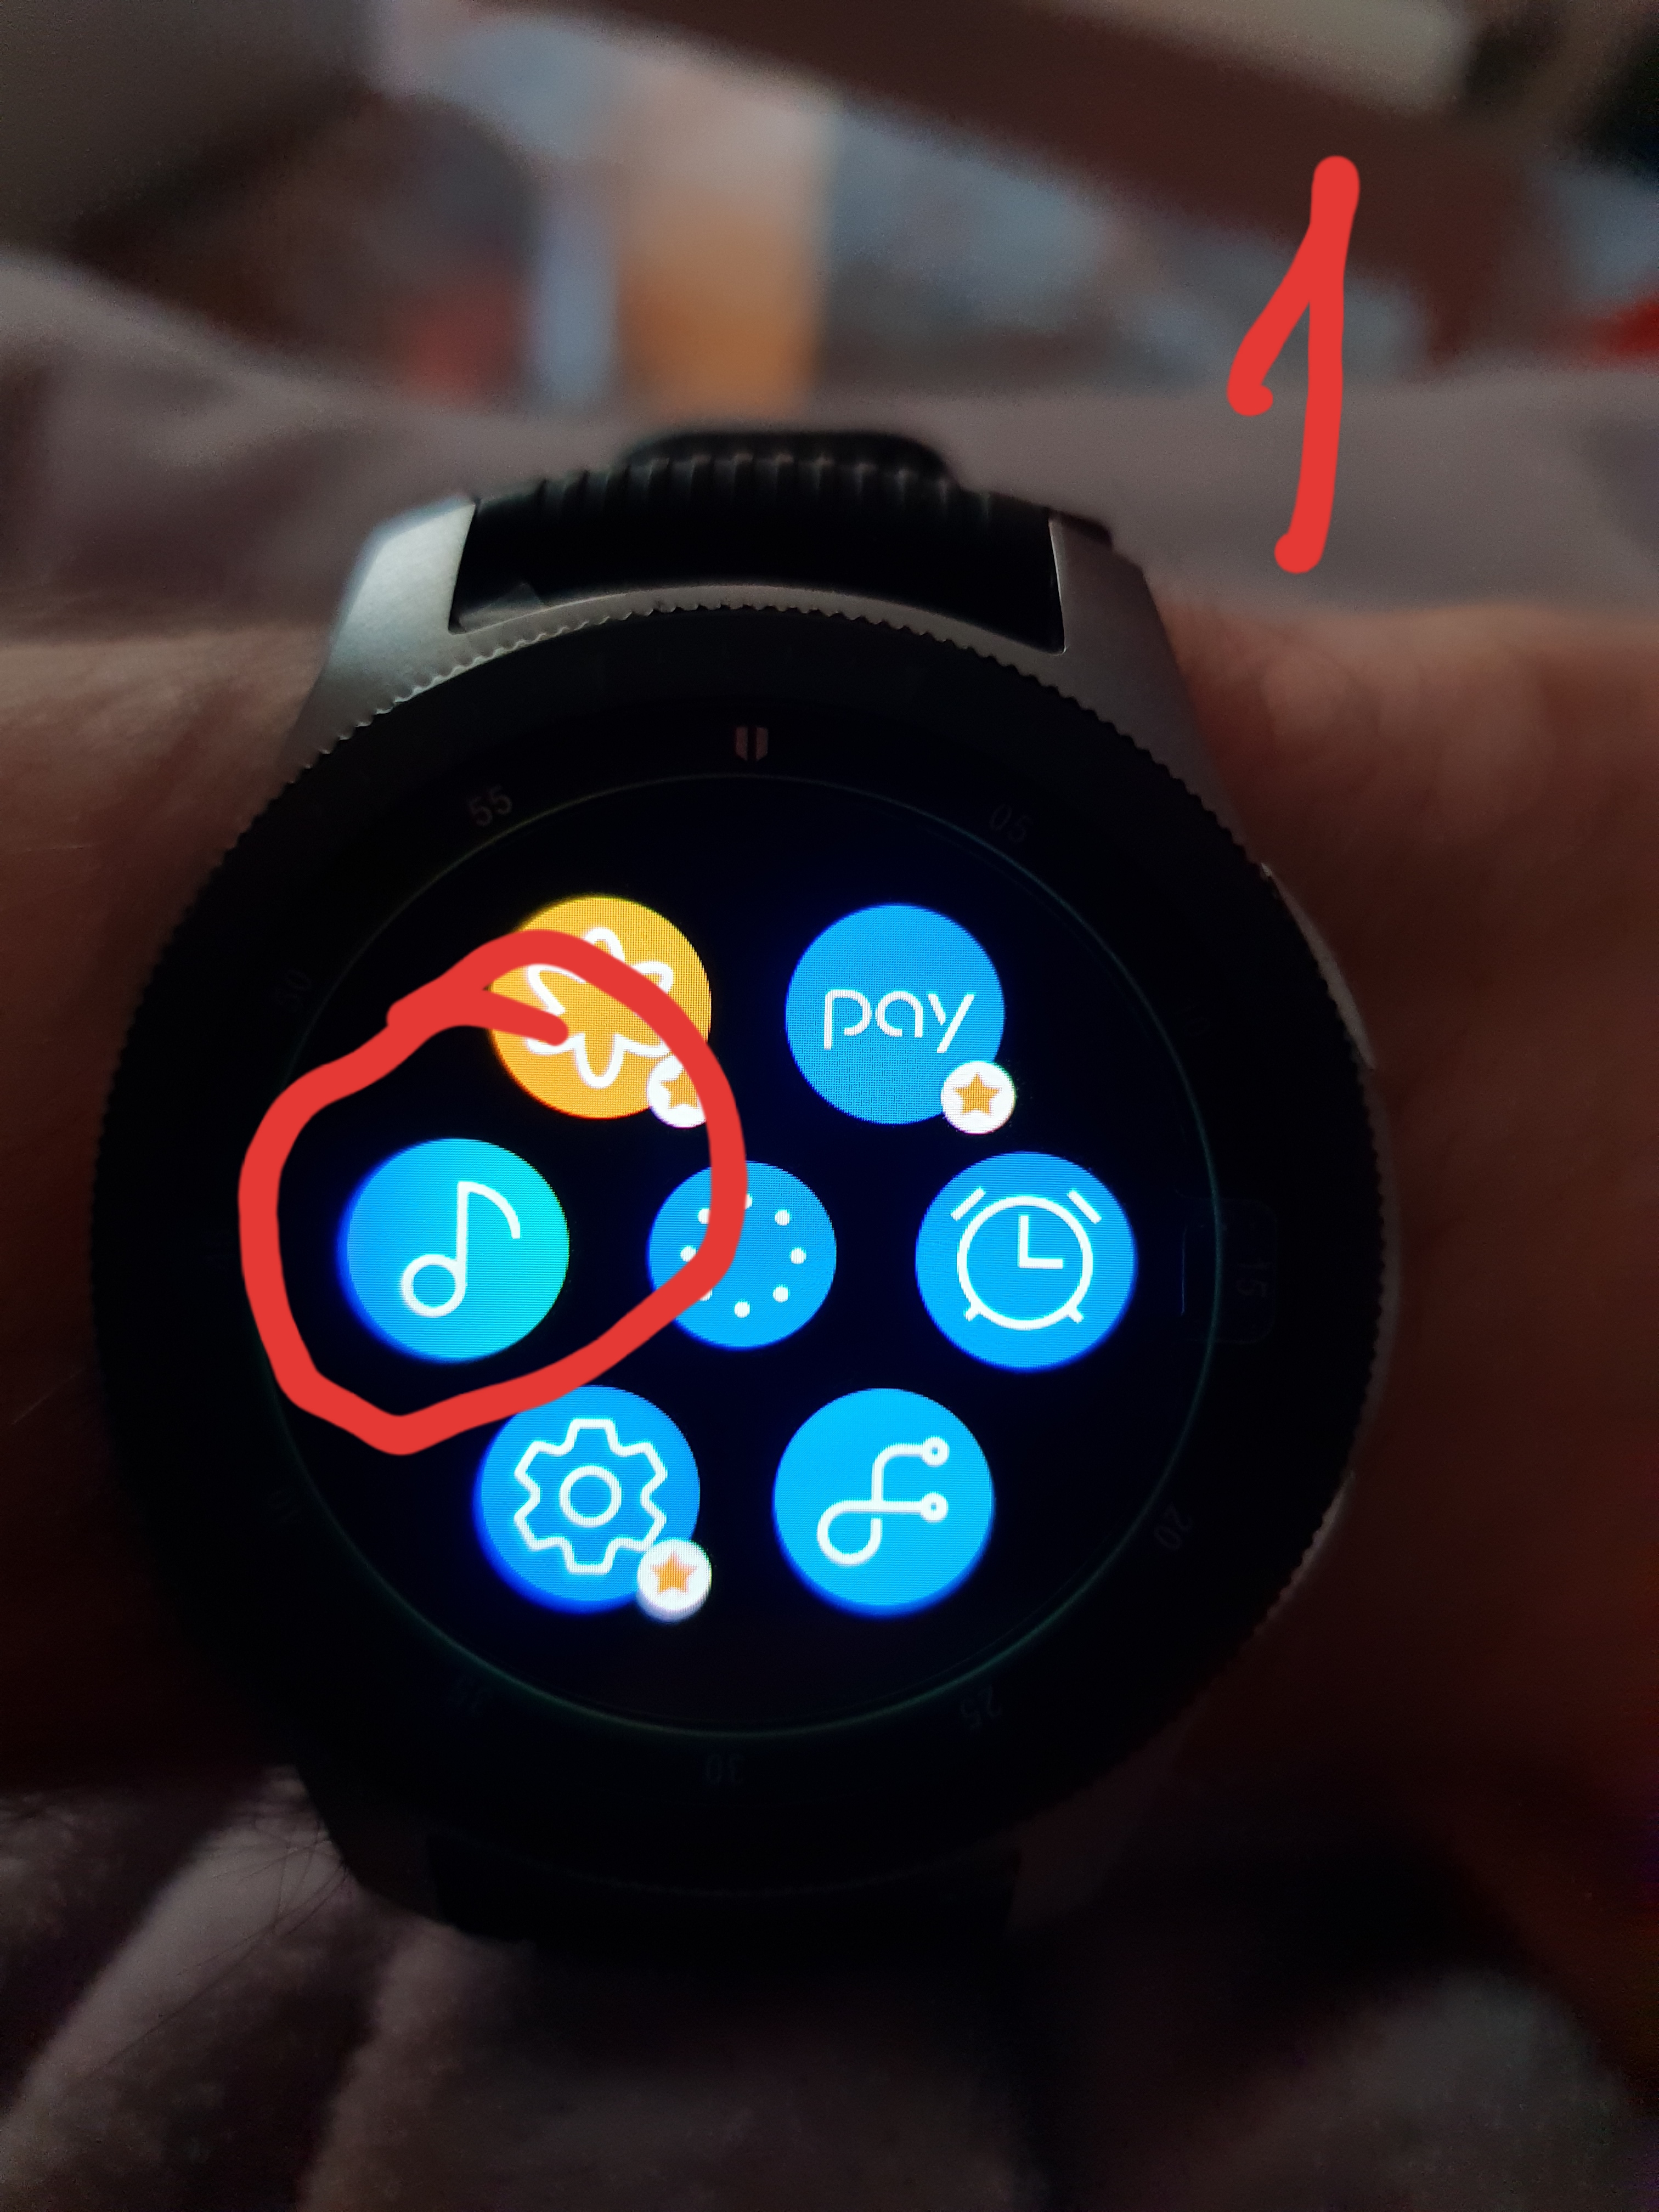 Solucionado: No consigo usar Spotify en Galaxy Watch - Samsung Community